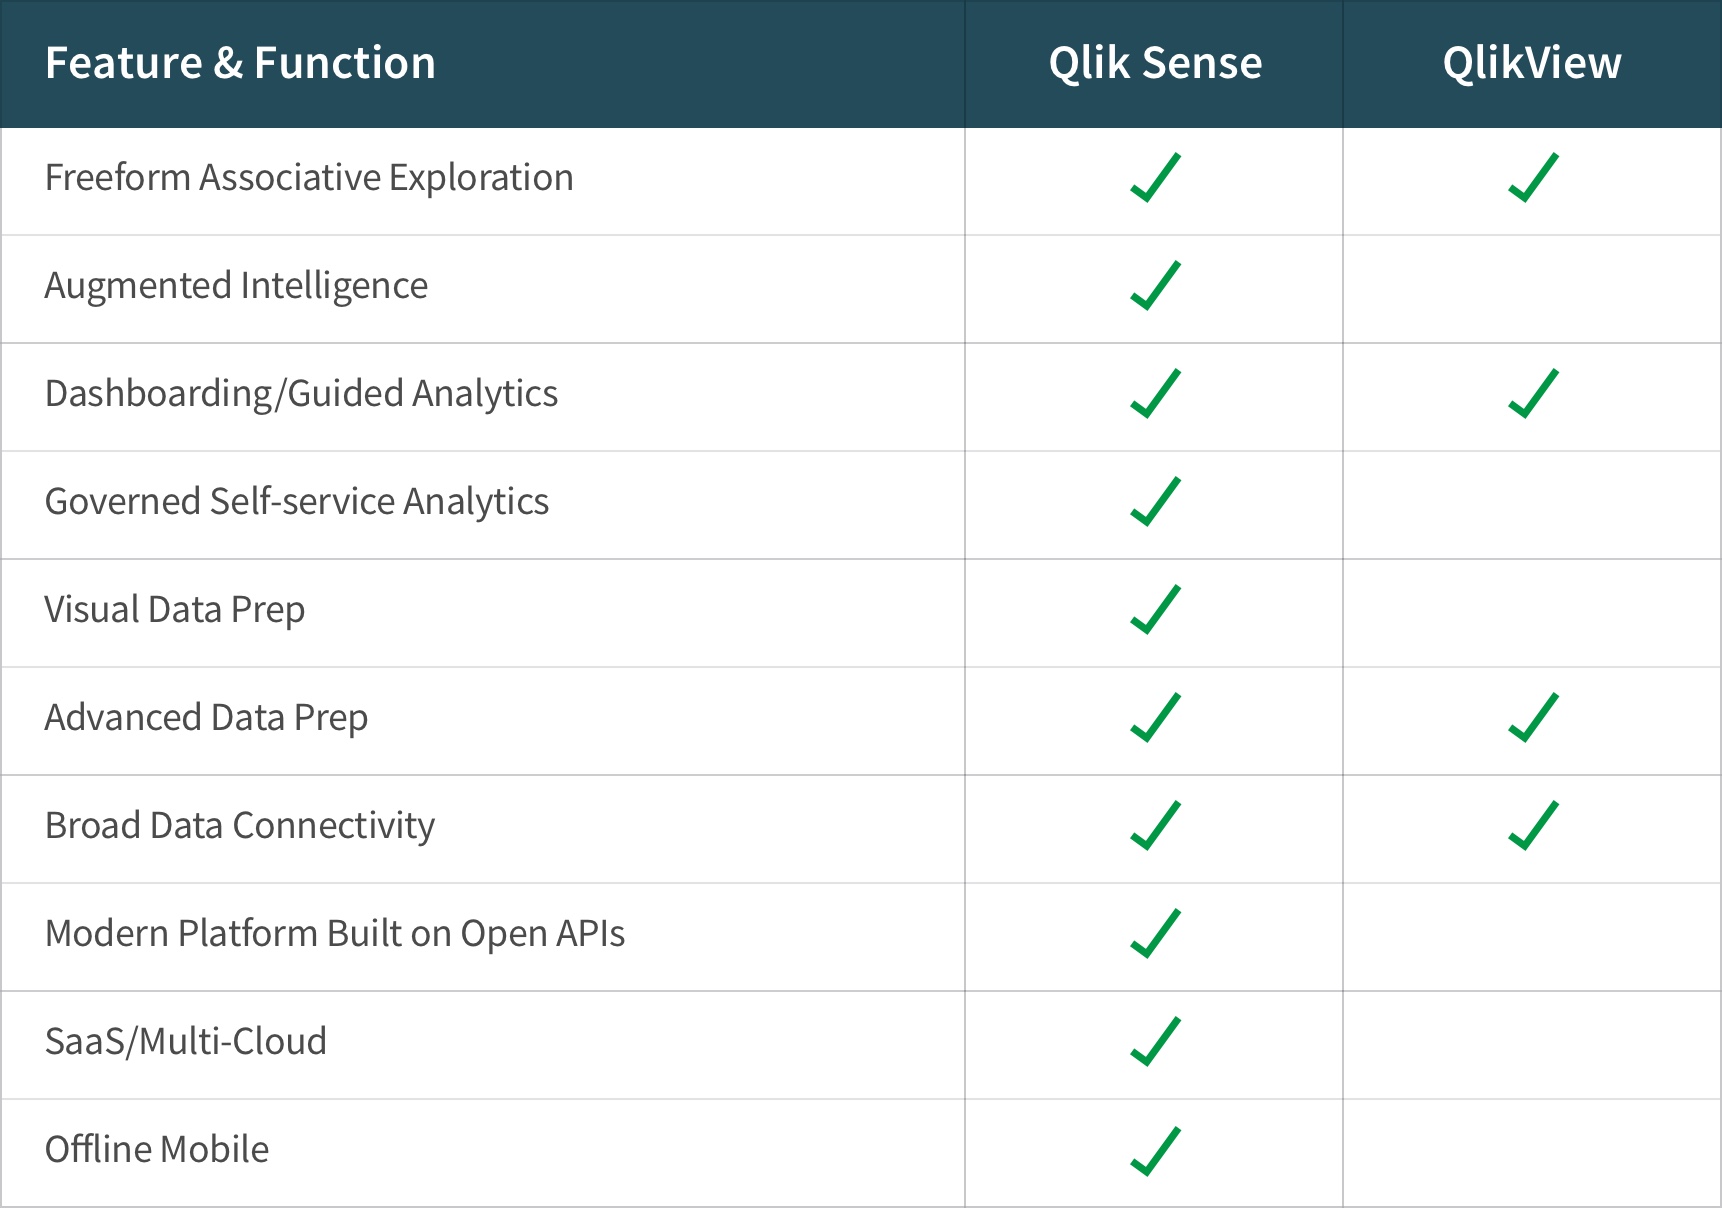 Matrix comparing the features of Qlik Sense and Qlikview